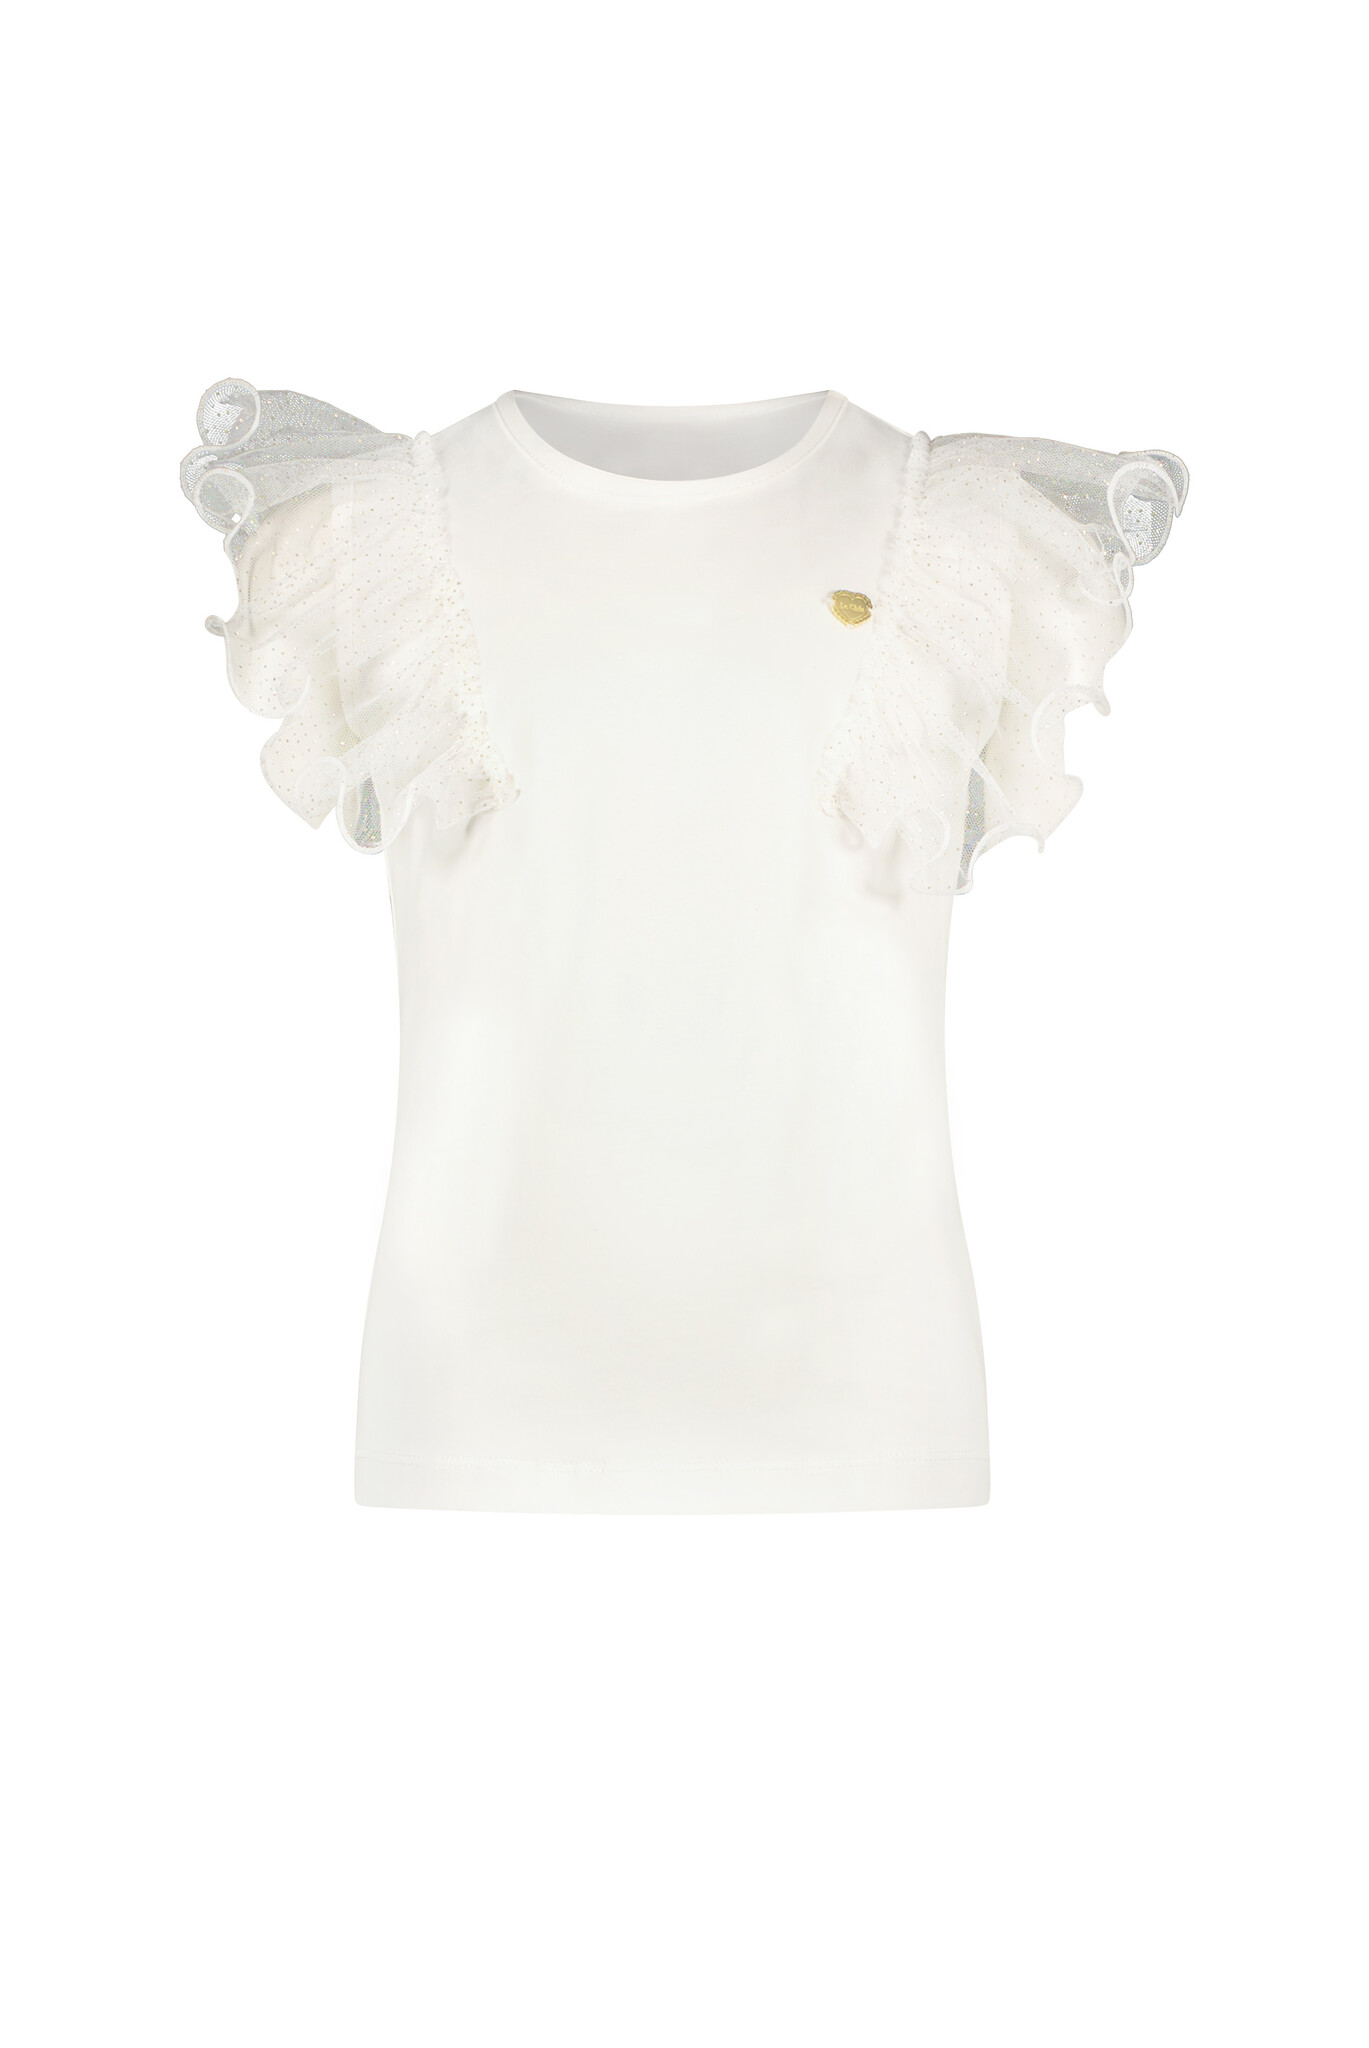 Le Chic C312-5402 Meisjes T-shirt - Off White - Maat 128